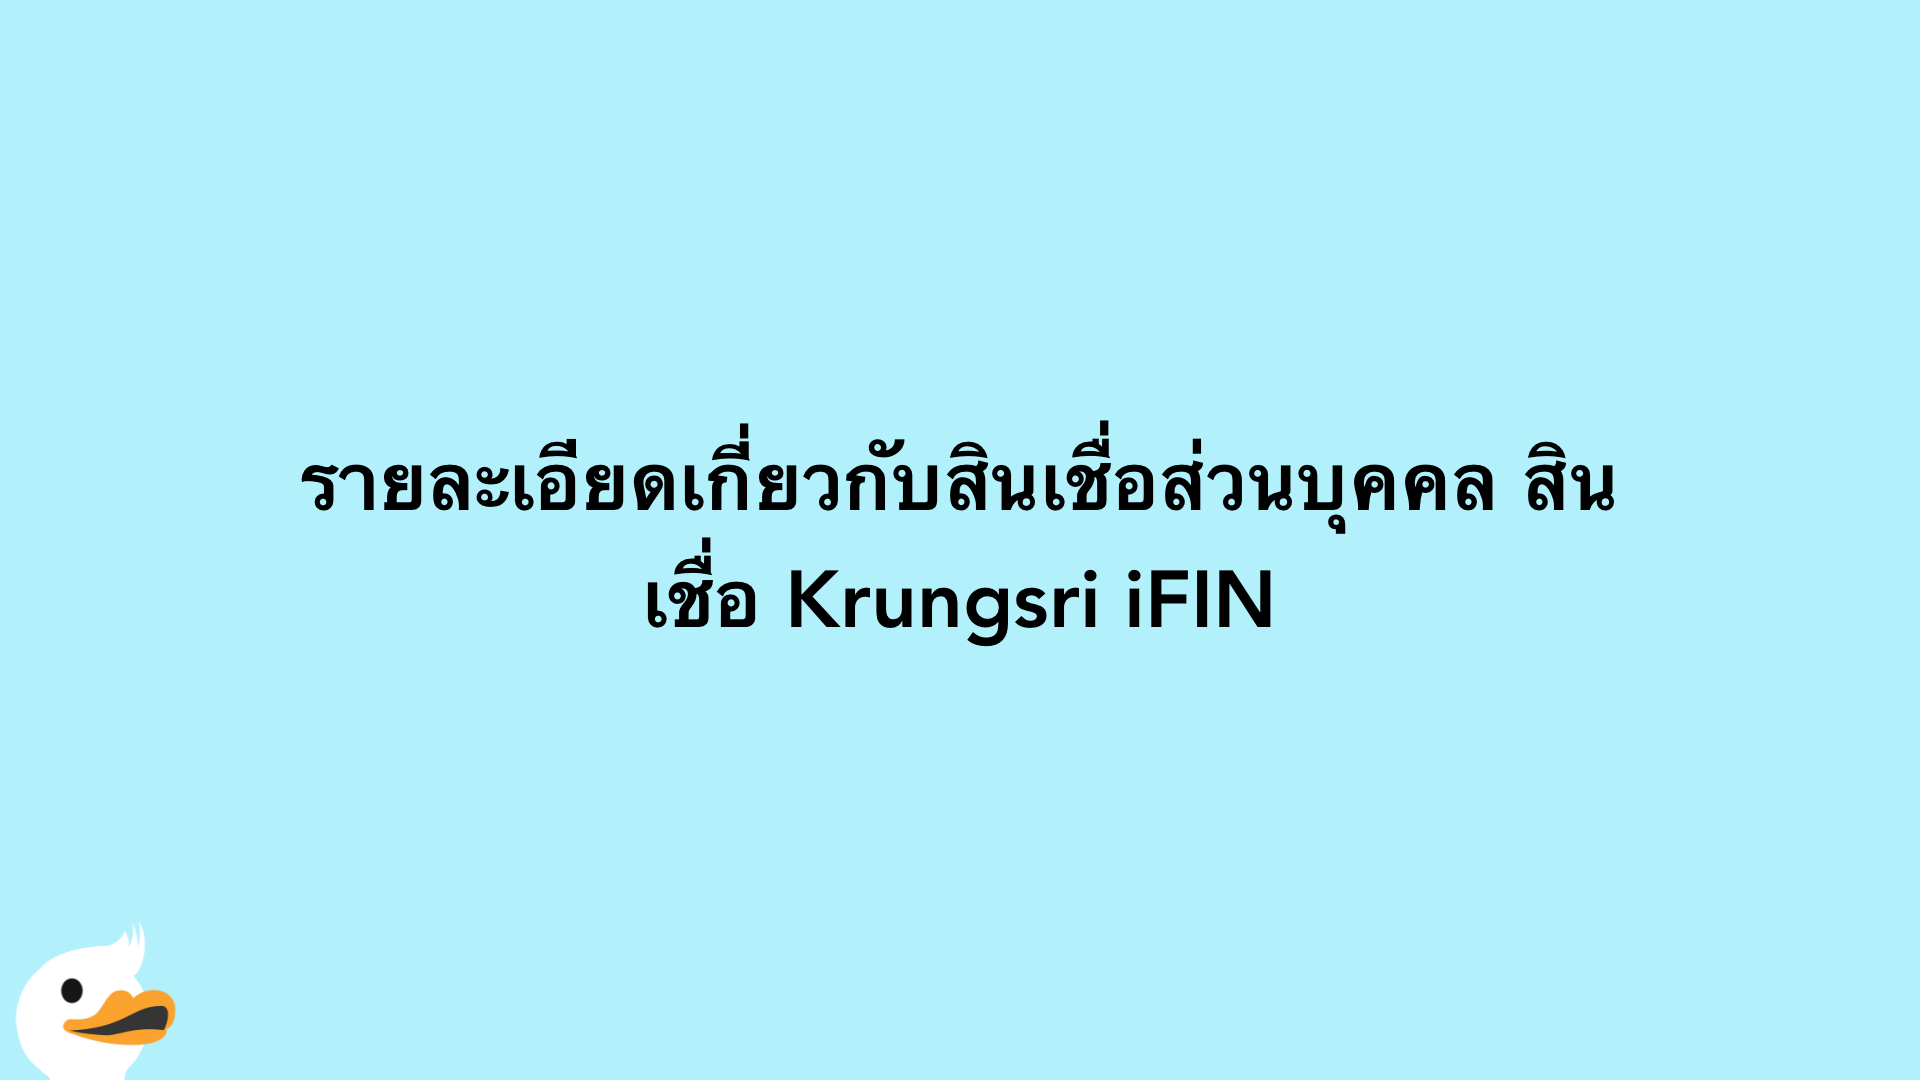 รายละเอียดเกี่ยวกับสินเชื่อส่วนบุคคล สินเชื่อ Krungsri iFIN